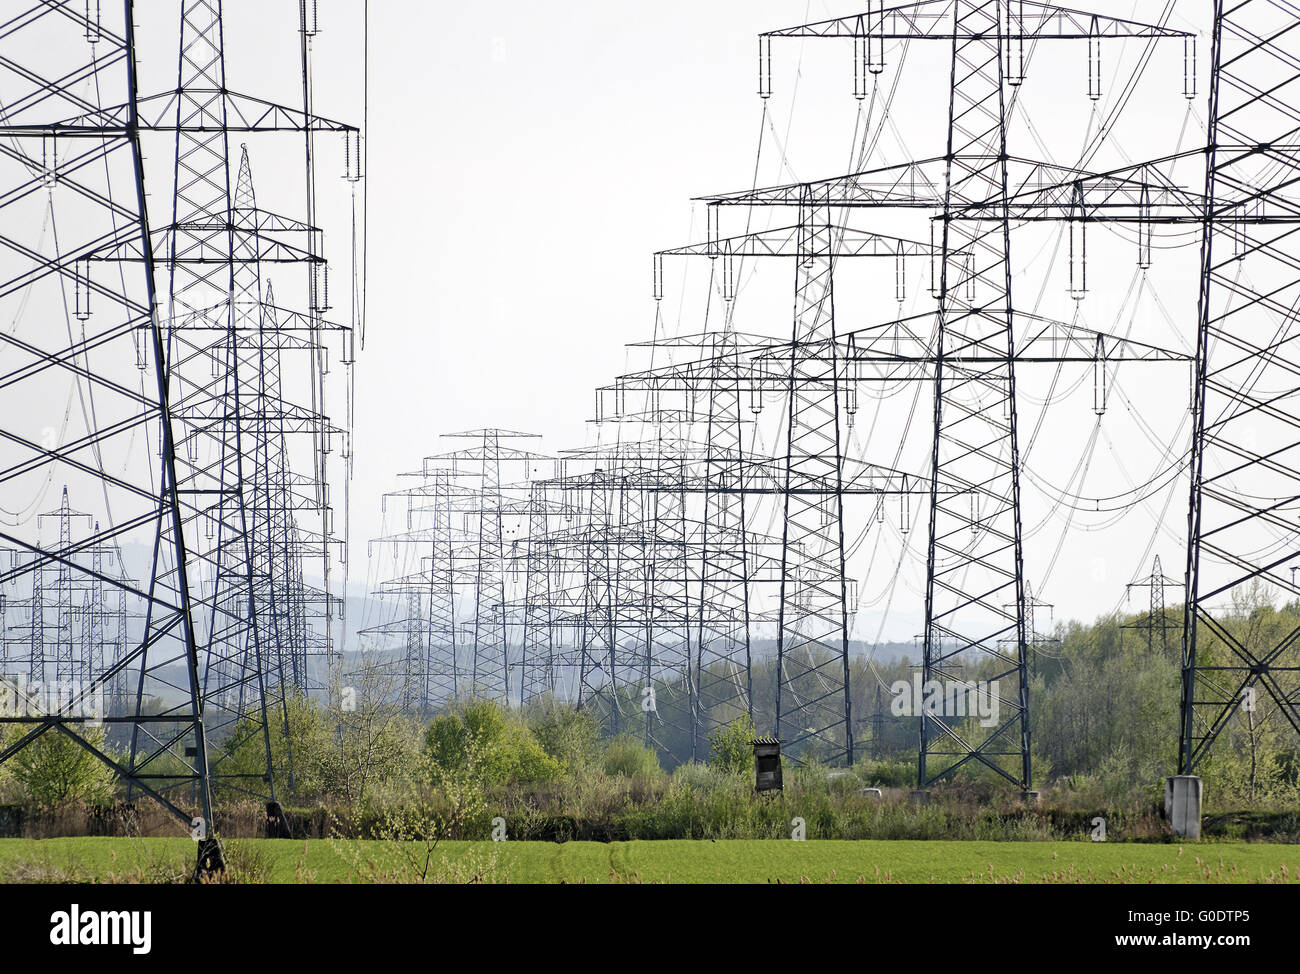 Postes de electricidad con múltiples líneas de alta tensión, Foto de stock